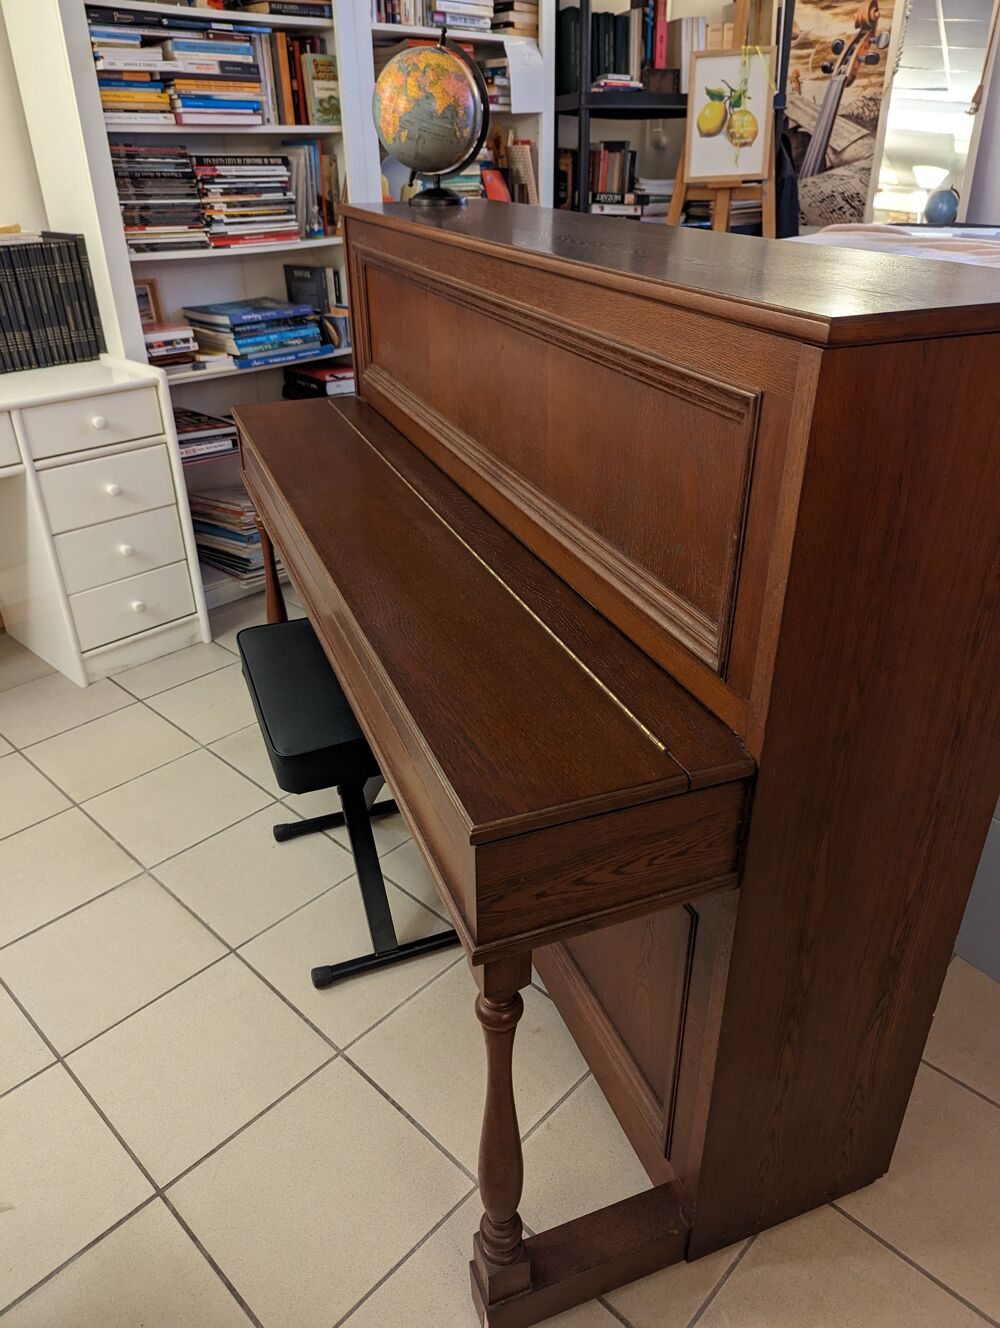 Piano droit Yamaha 1985. Instruments de musique